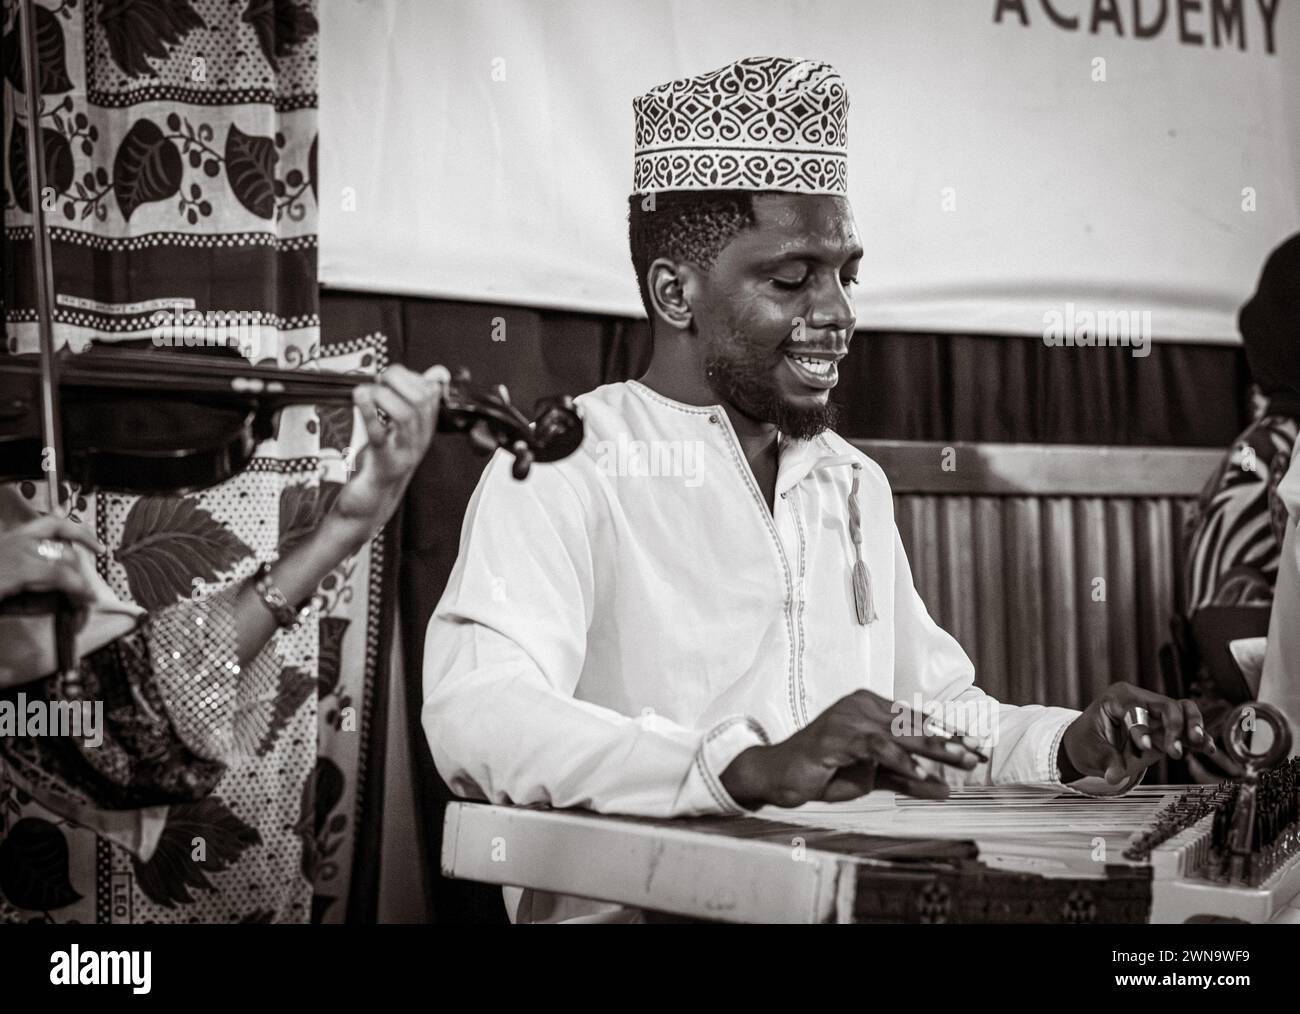 Les musiciens jouent de la musique Taarab, concert de la Dhow Countries Music Academy (DCMA), Stone Town, Zanzibar, Tanzanie Banque D'Images